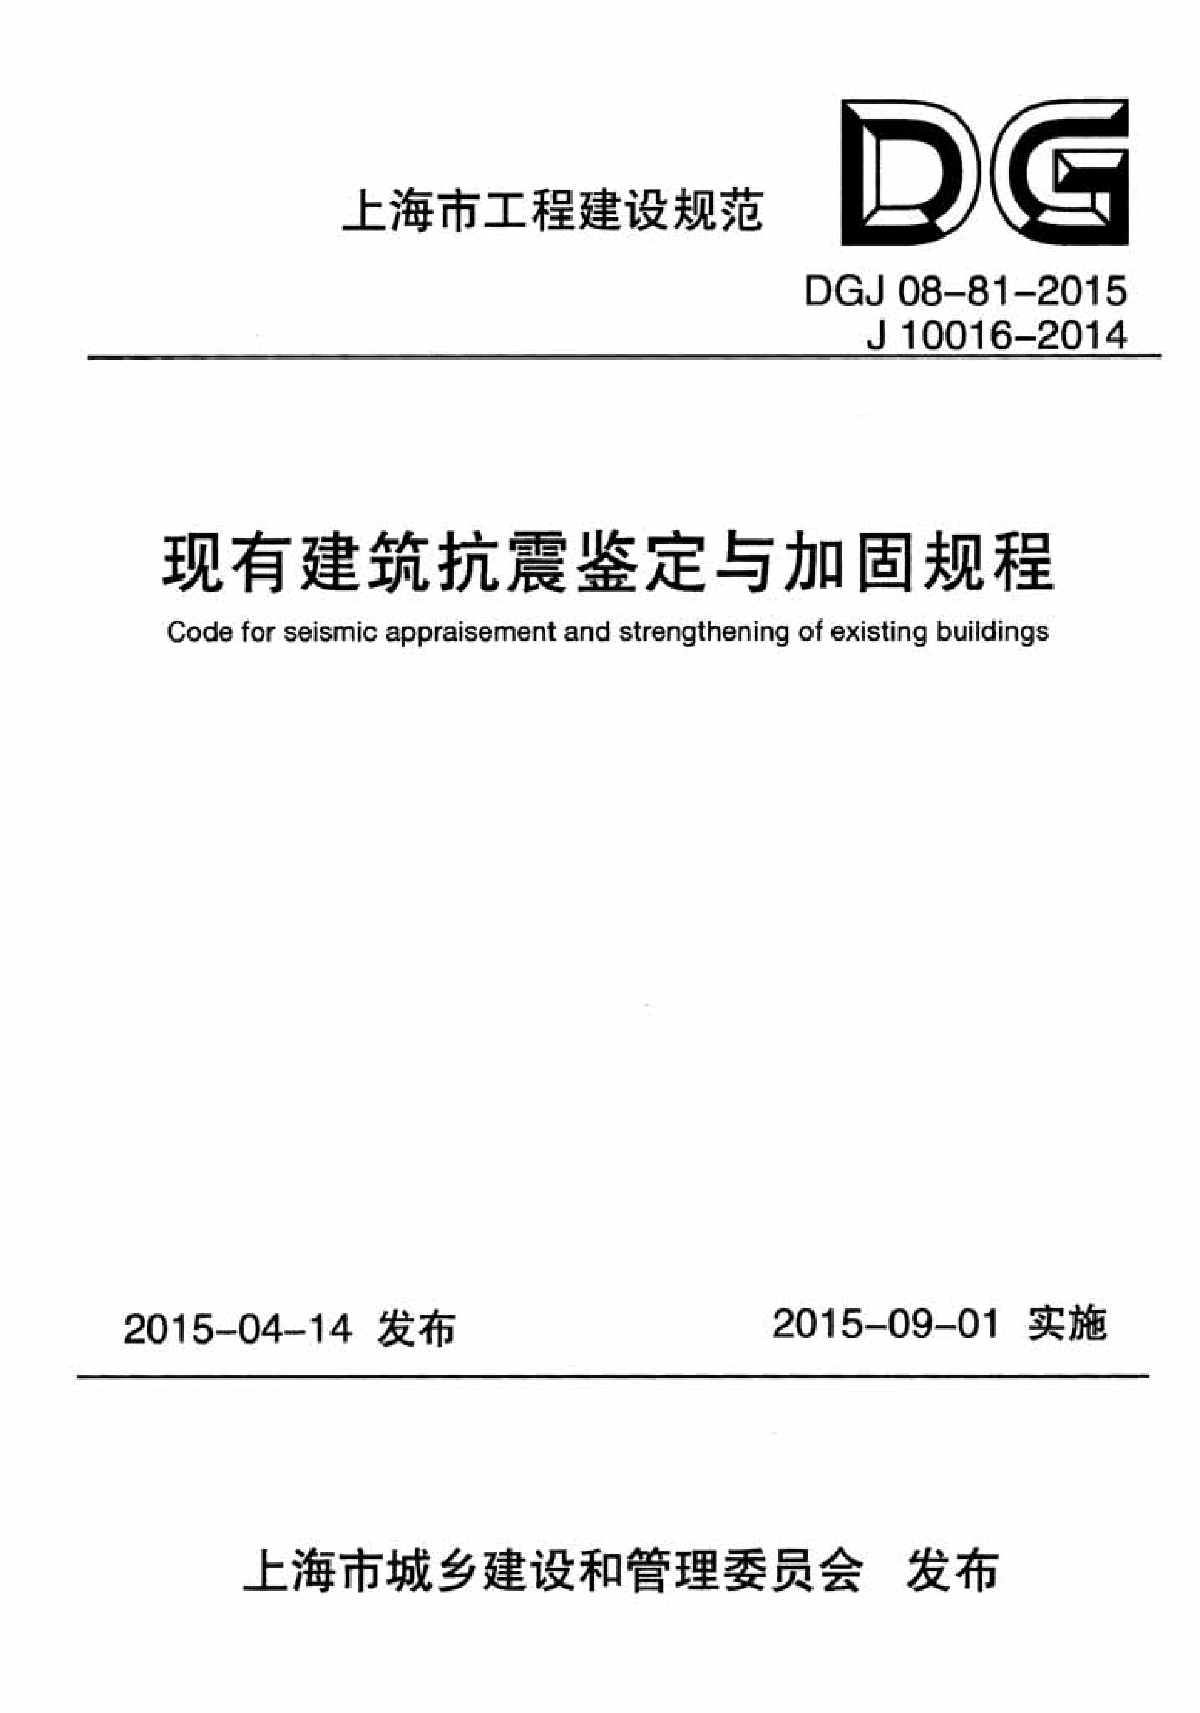 DGJ08-81-2015现有建筑抗震鉴定与加固规程-图一